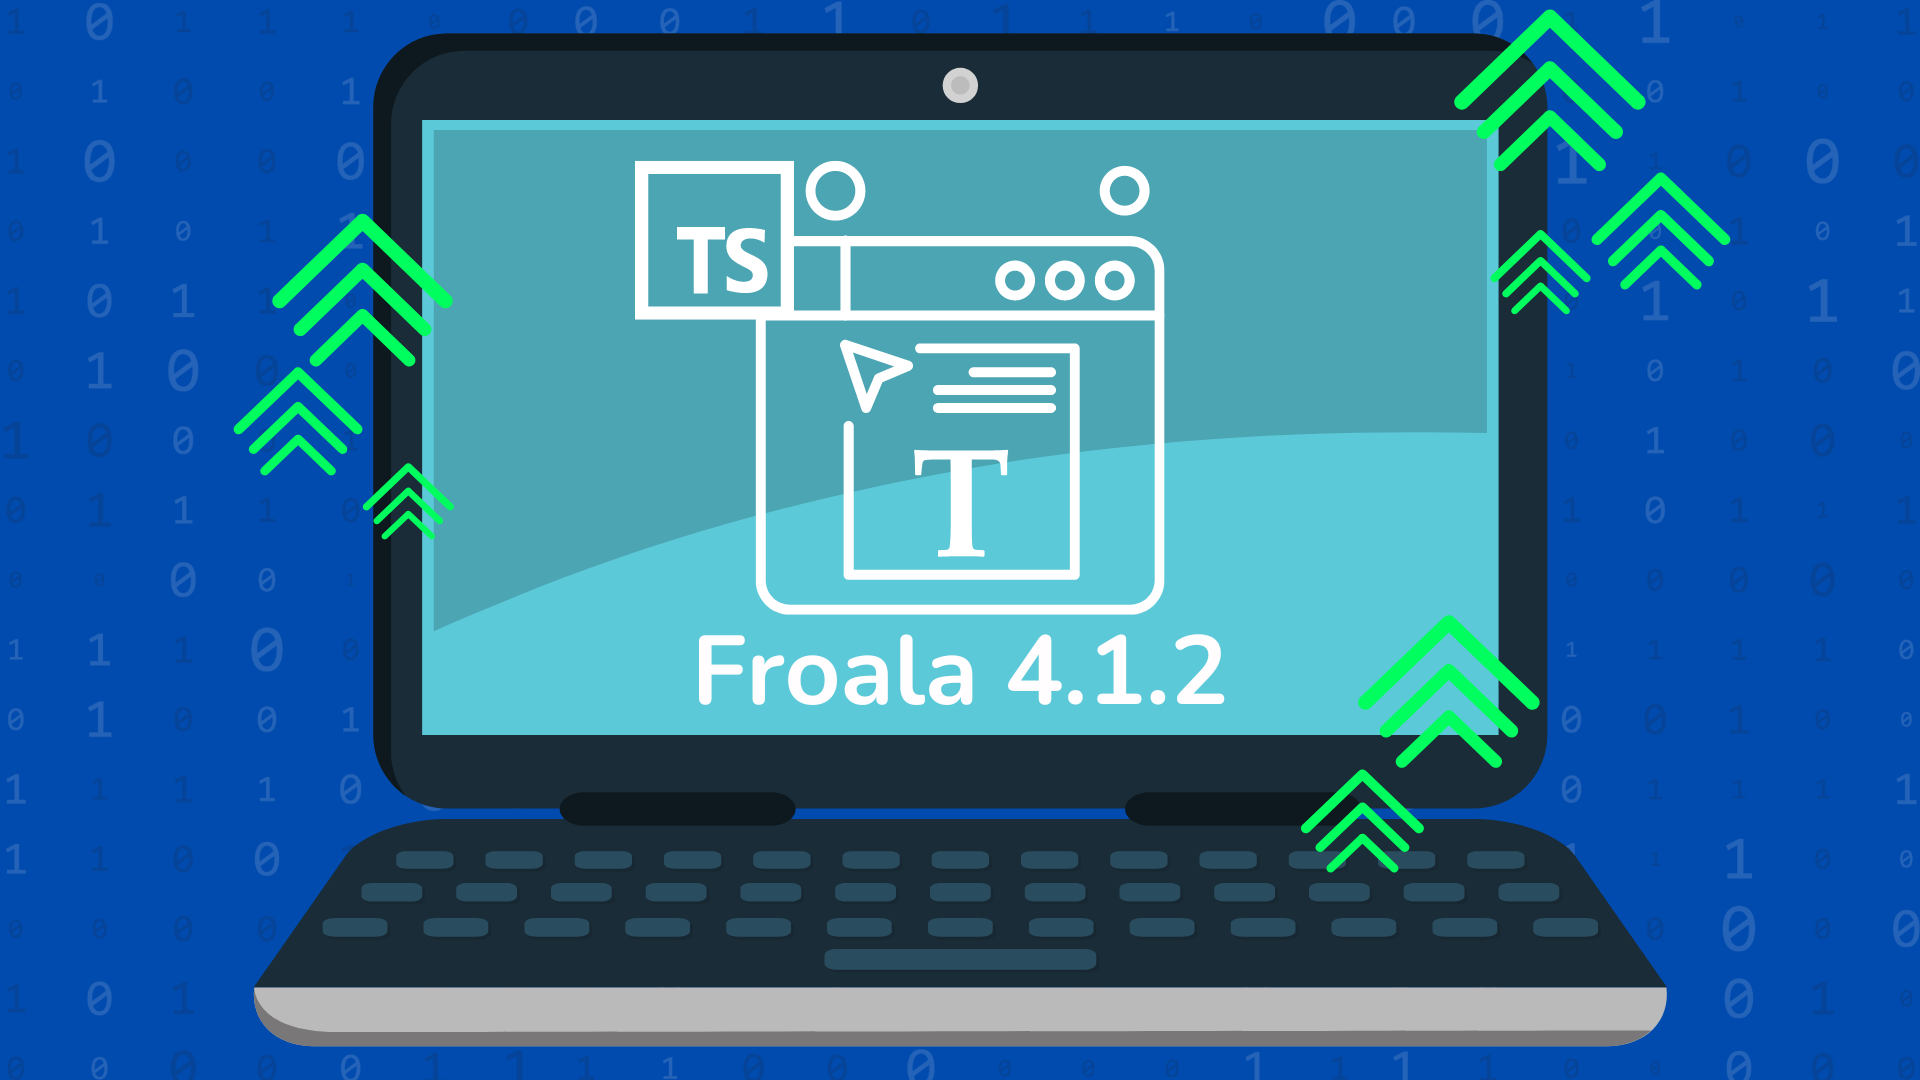 Froala new release